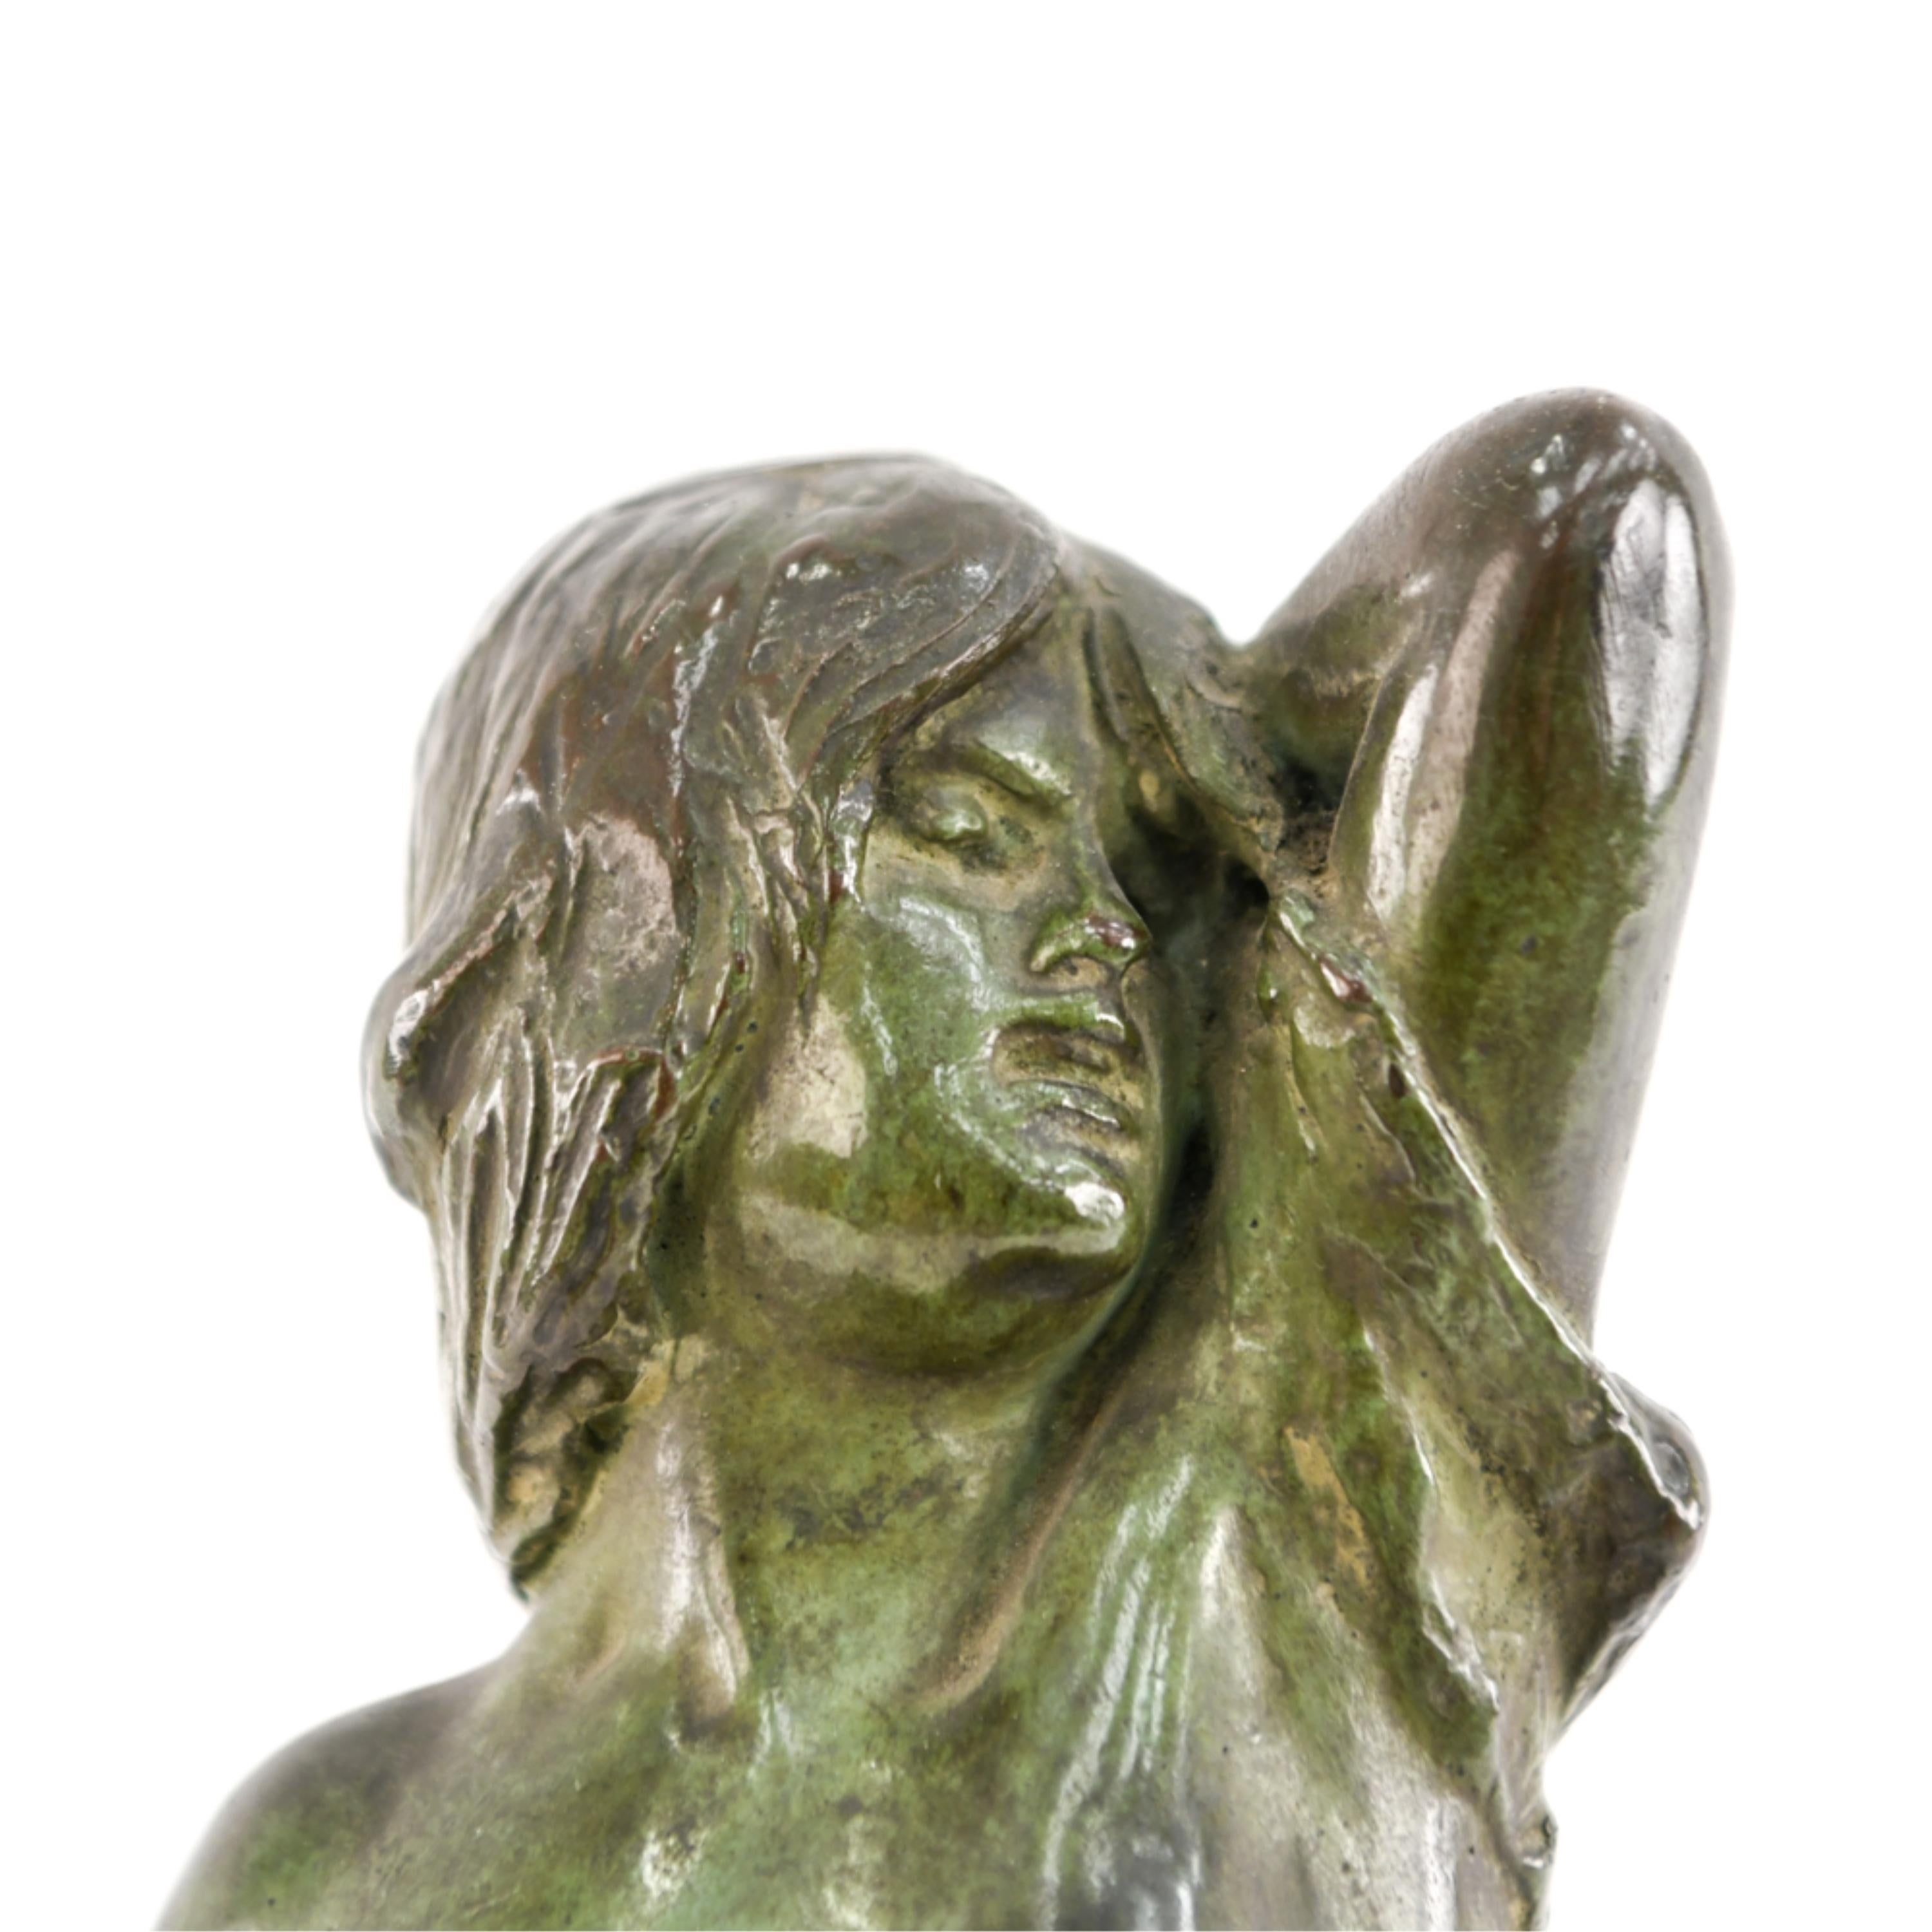 Il s'agit d'une intéressante sculpture en métal patiné représentant une femme nue. La base indique 